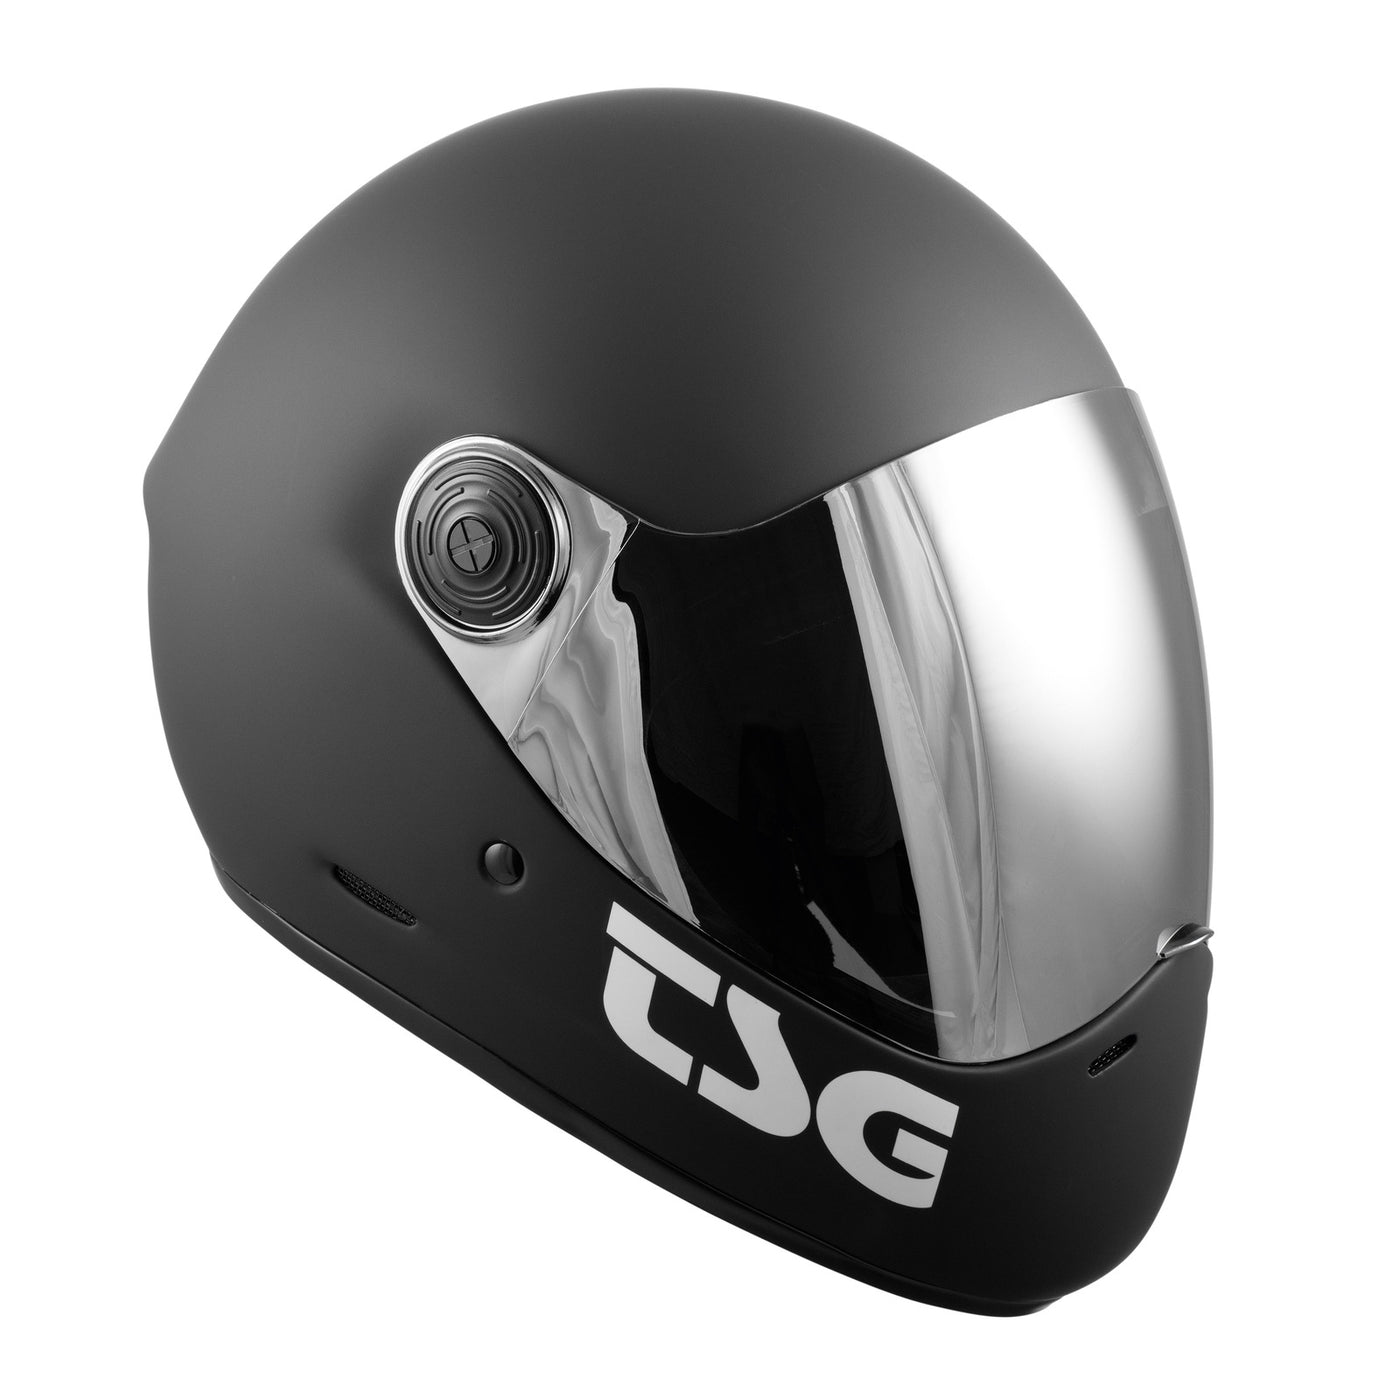 Full face skateboard helmet by TSG